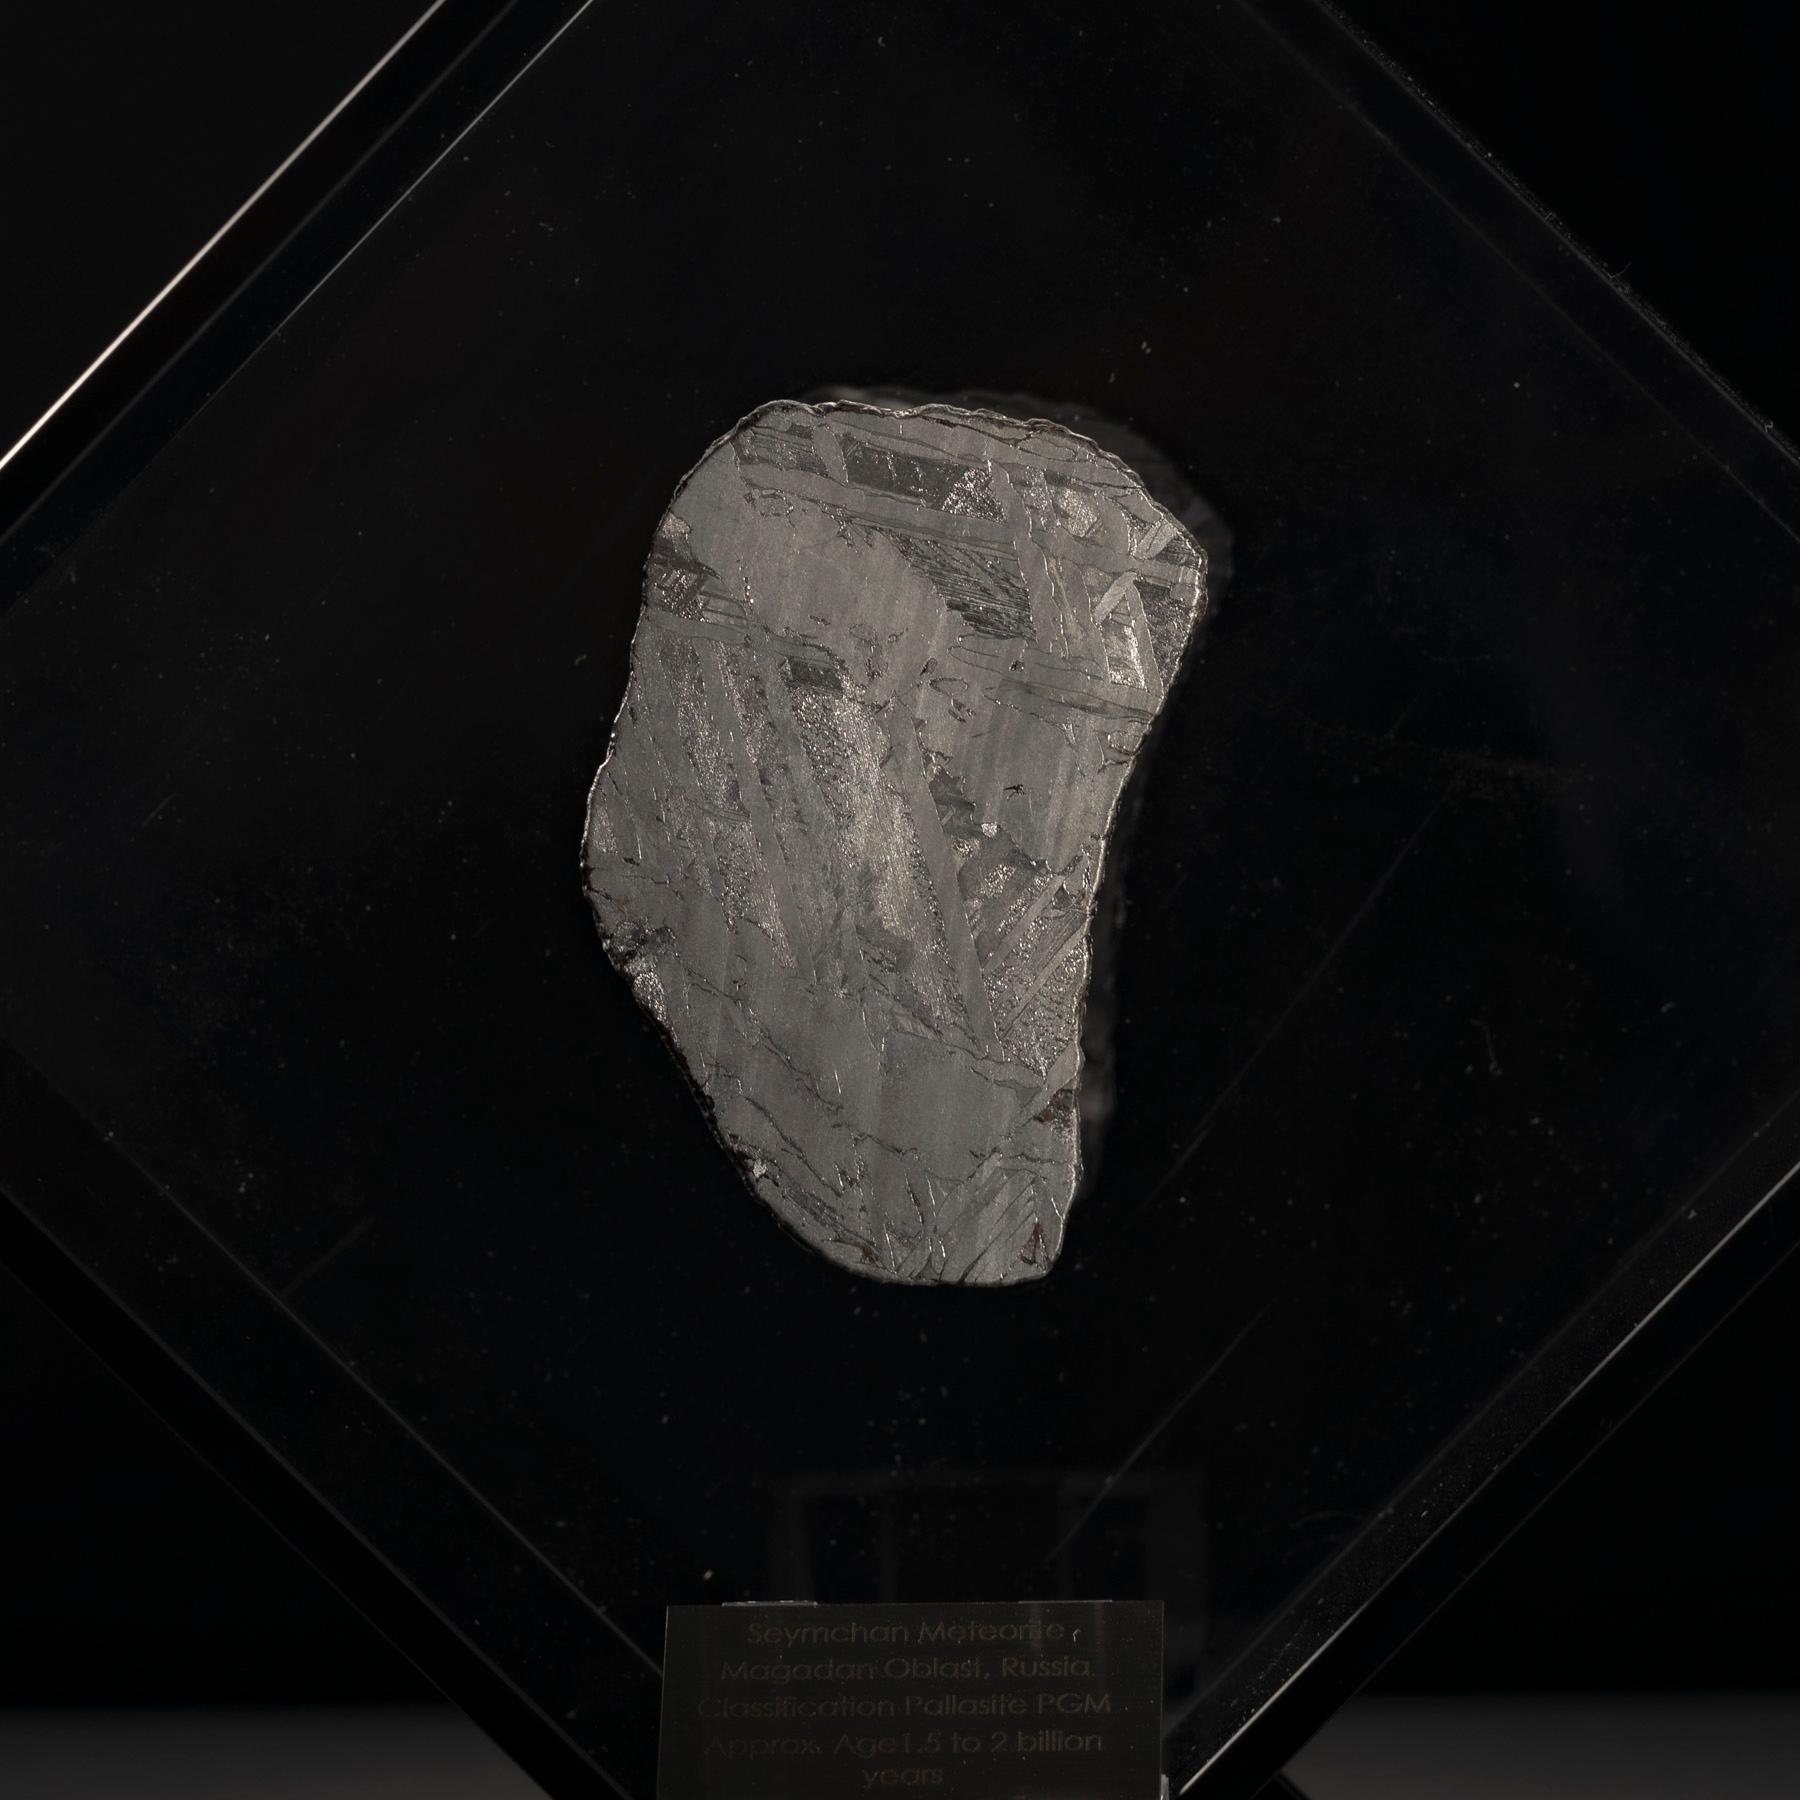 Contemporary Original Design, Seymchan Meteorite in a Black Acrylic Display For Sale